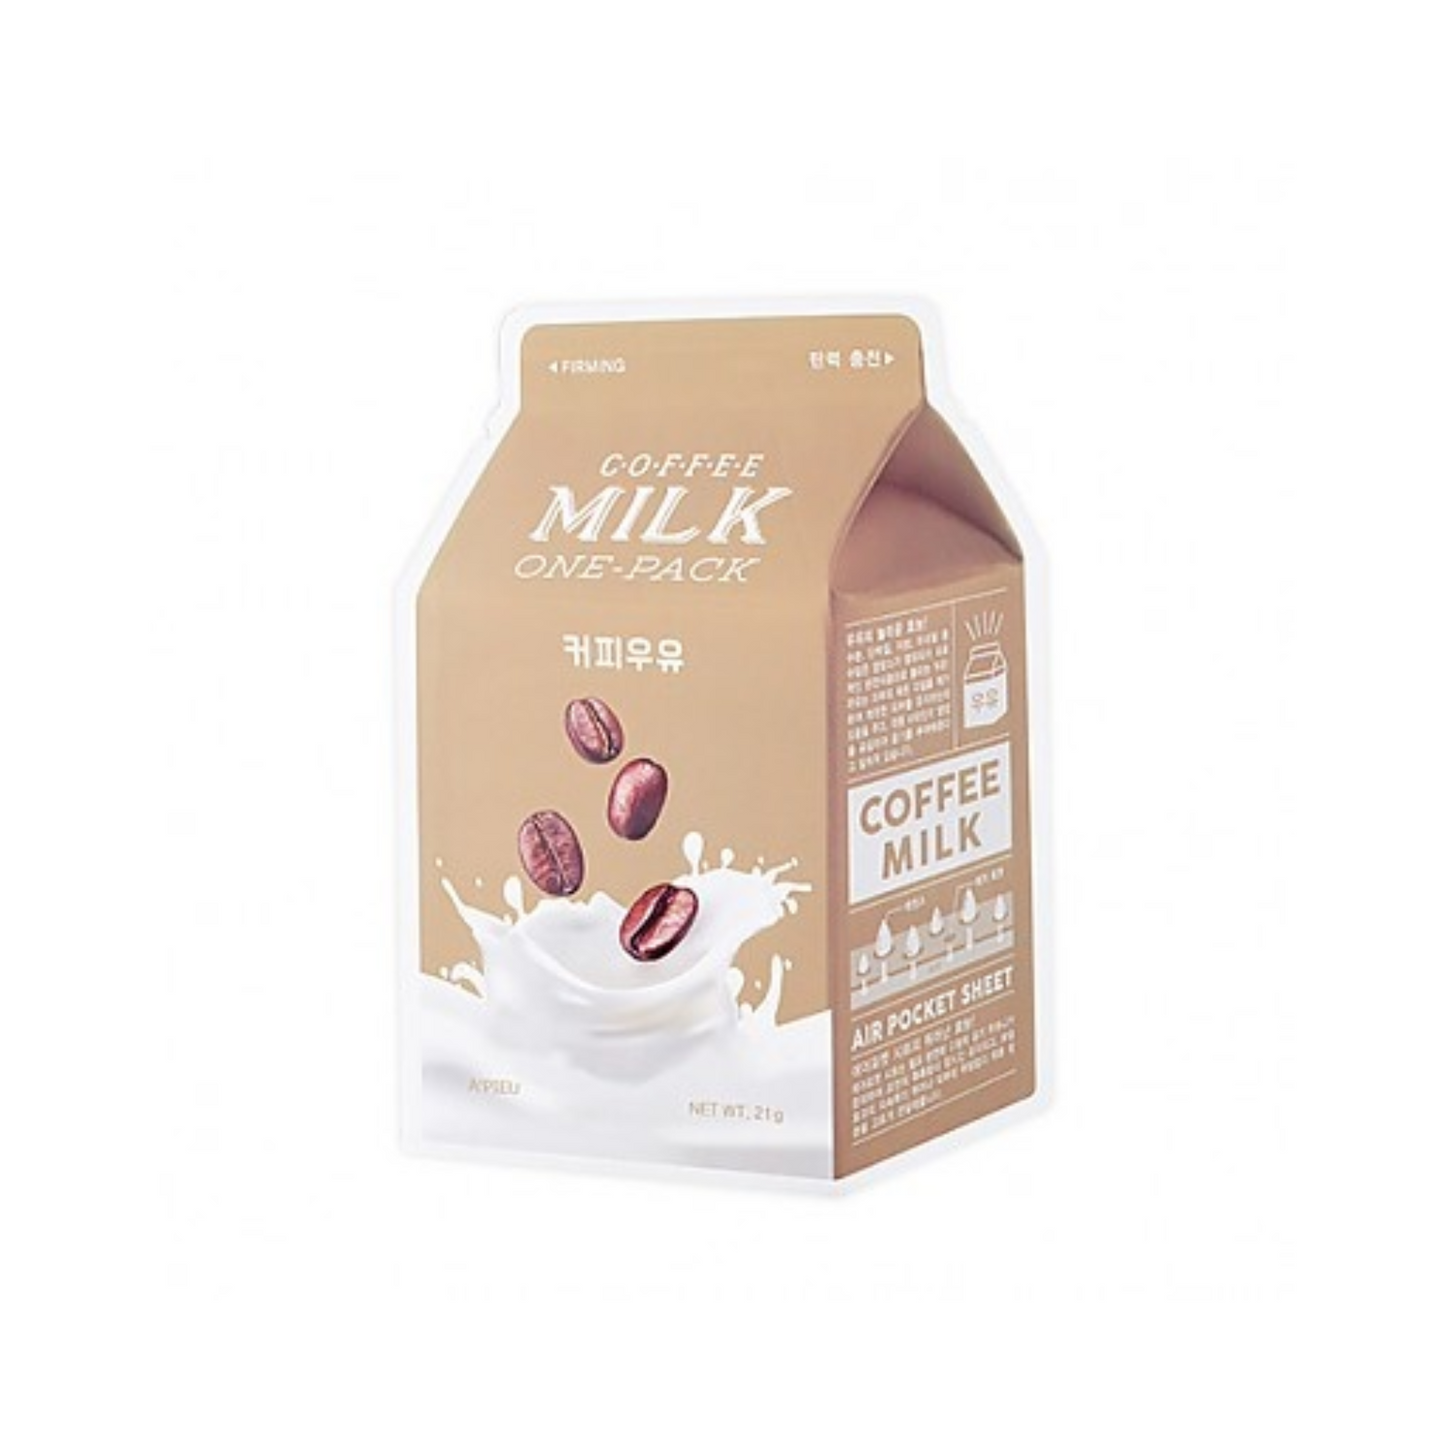 APIEU Milk One Pack #Coffee Milk